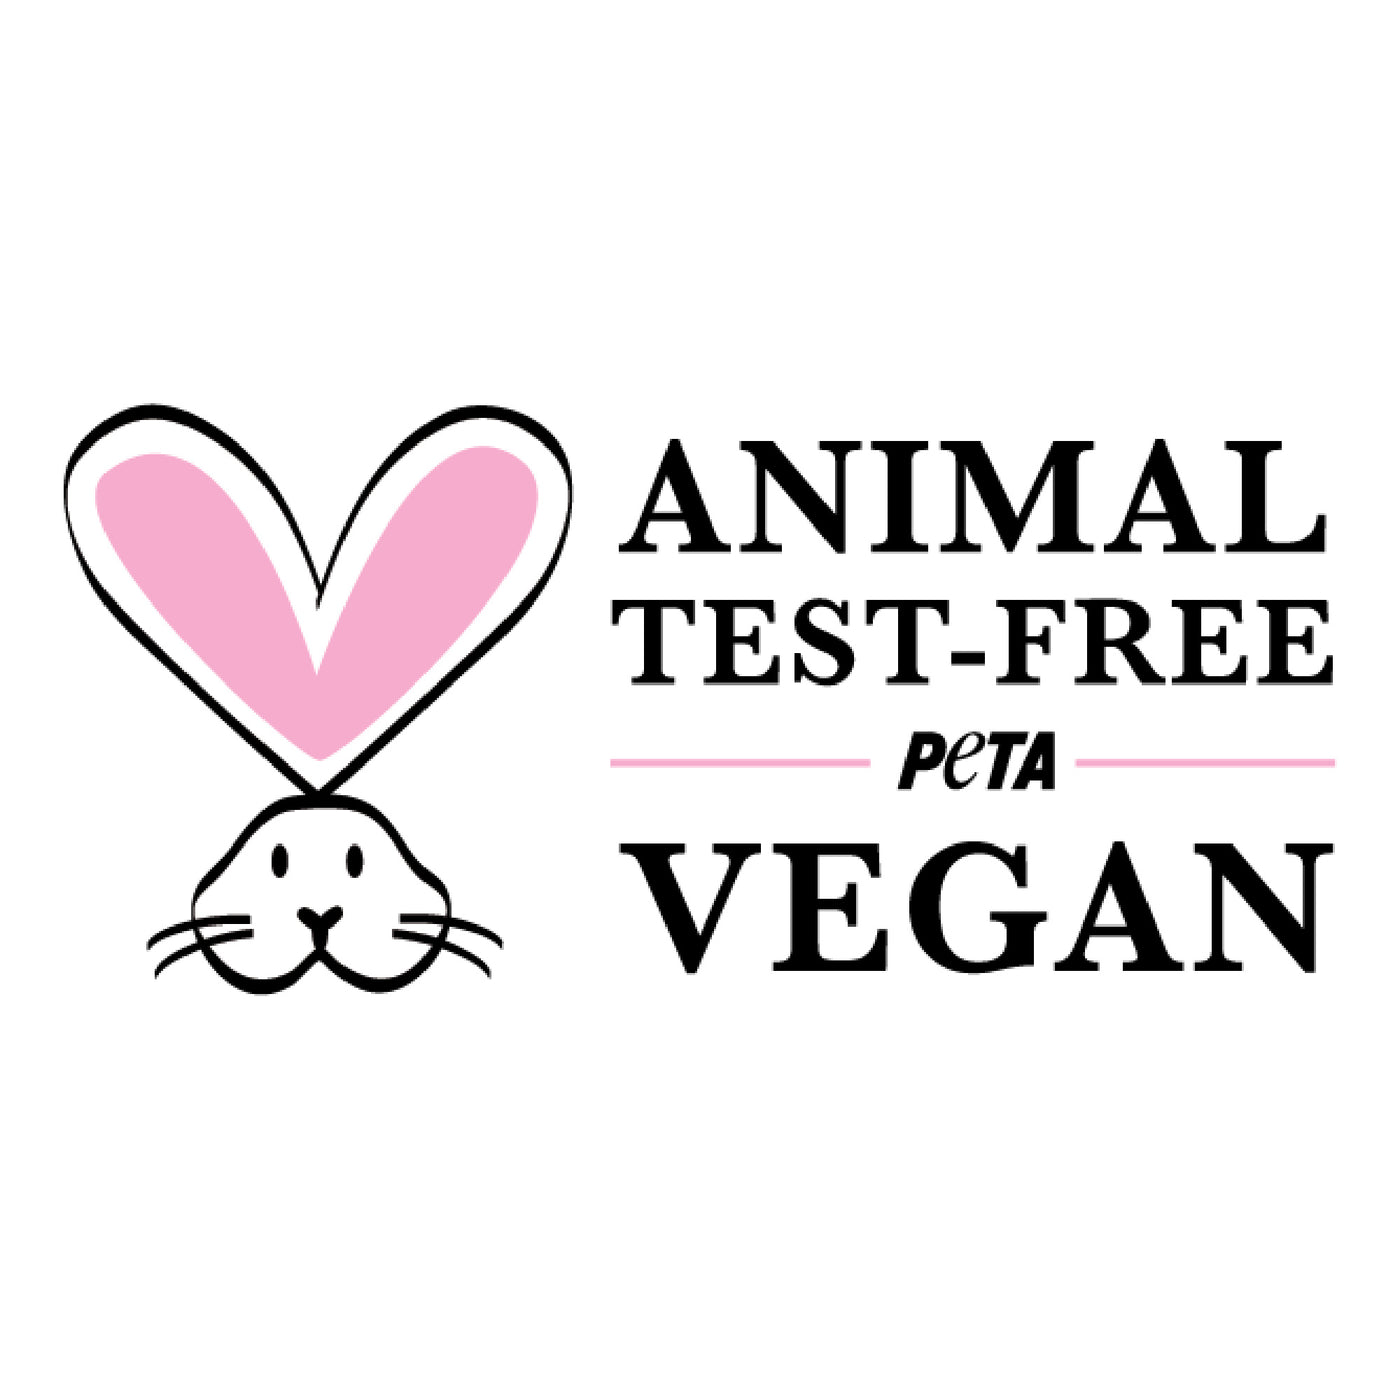 PETA animal test free and vegan